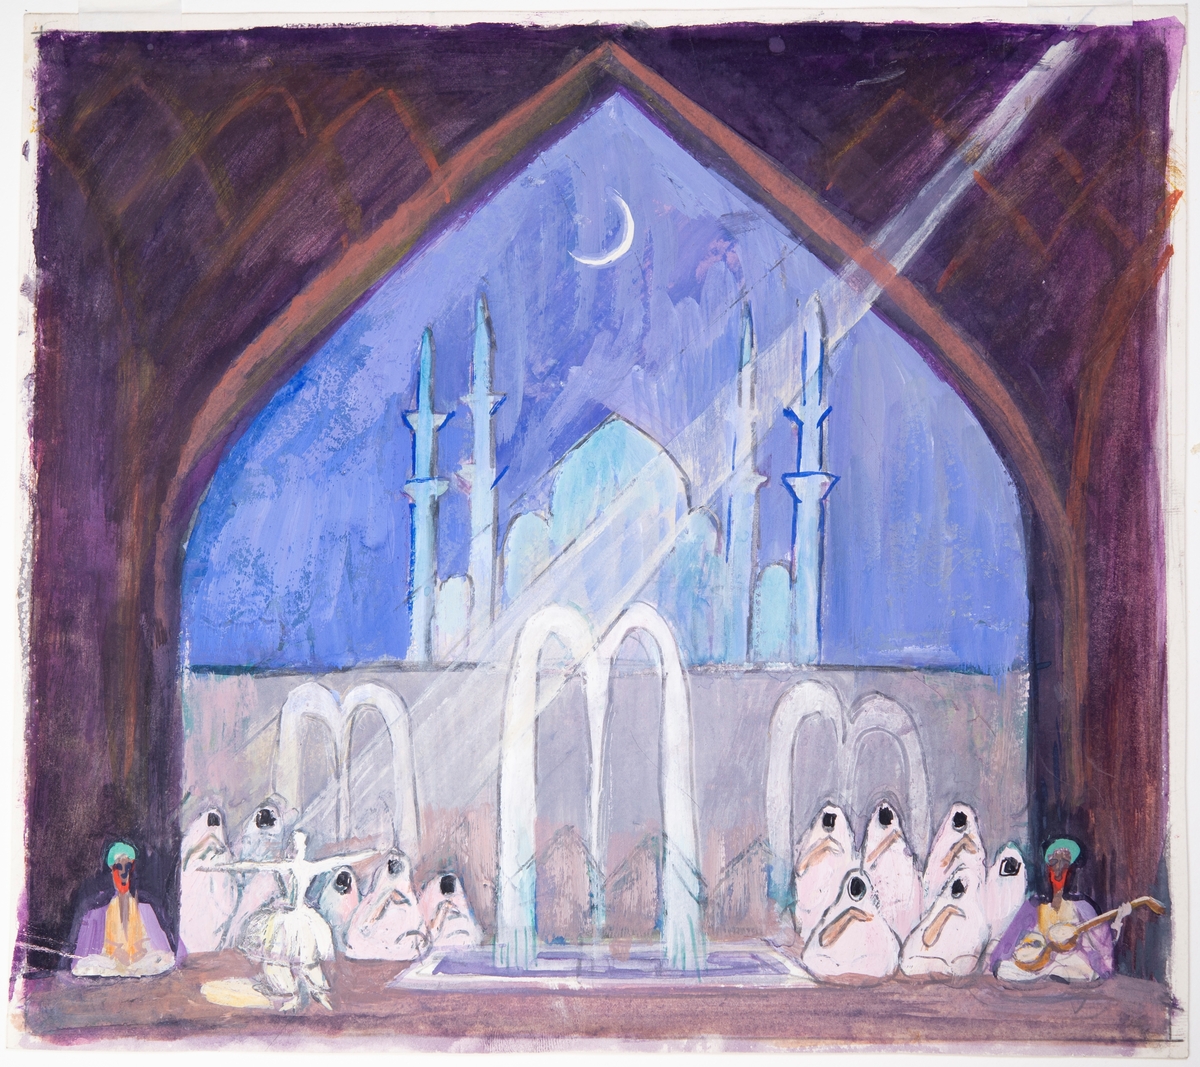 Kan vara skiss till ett sceneri för en teaterscen, formen på kulissen och ljuset från strålkastaren påminner om Grosvalds skildringar av basarer och hamam. Personen till vänster dansar en dans karaktäristisk för sufismen.